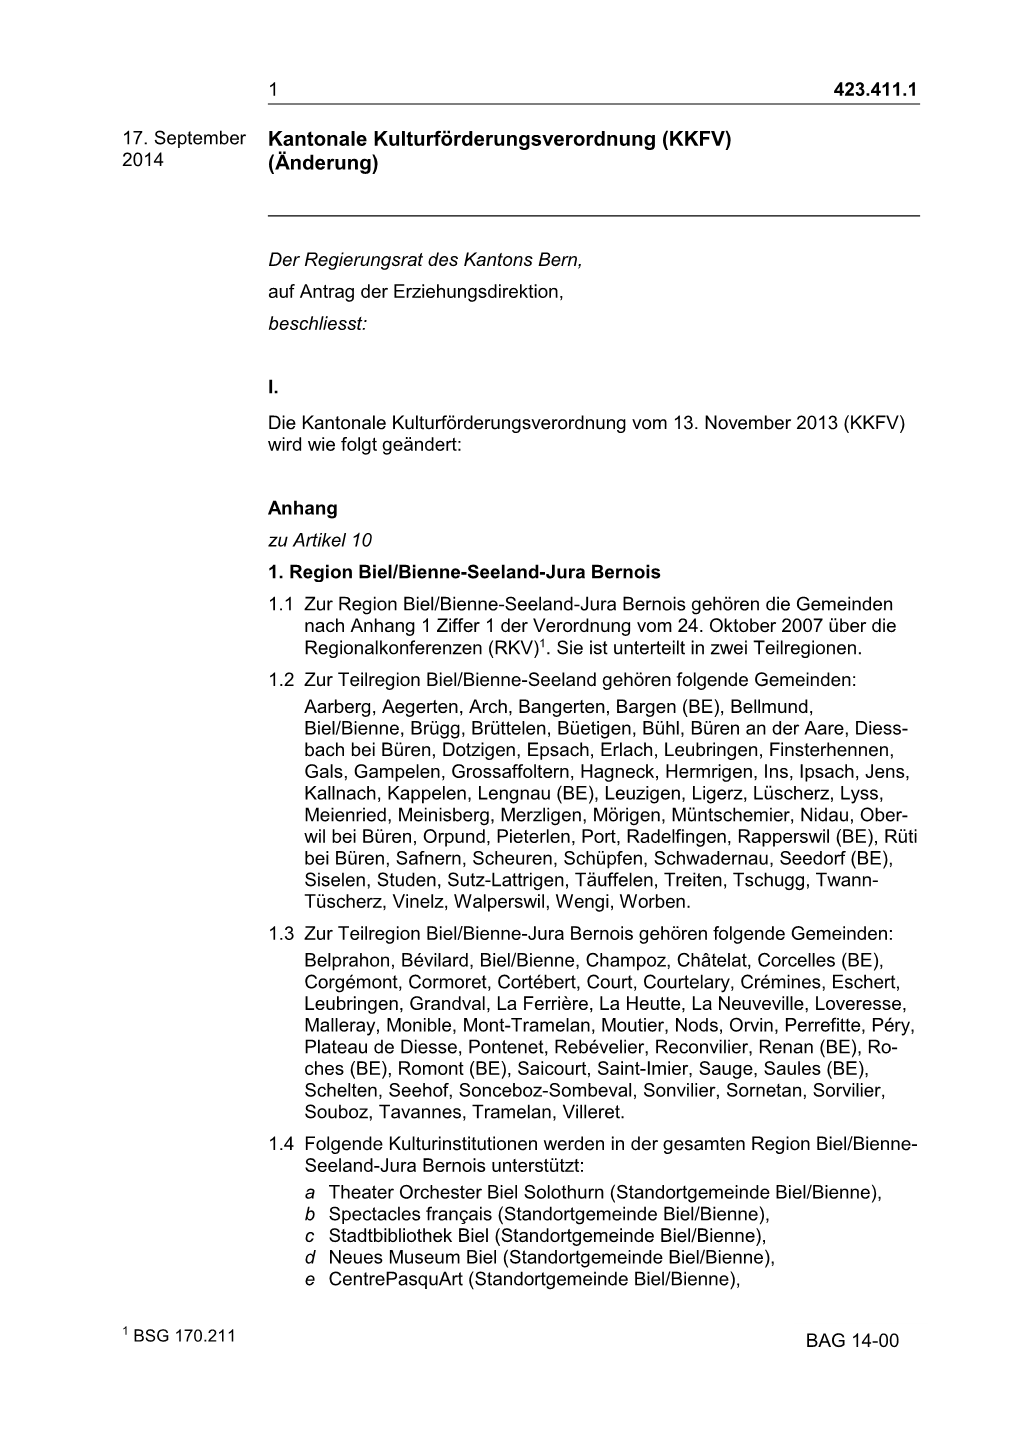 Kantonale Kulturförderungsverordnung (KKFV) 2014 (Änderung)